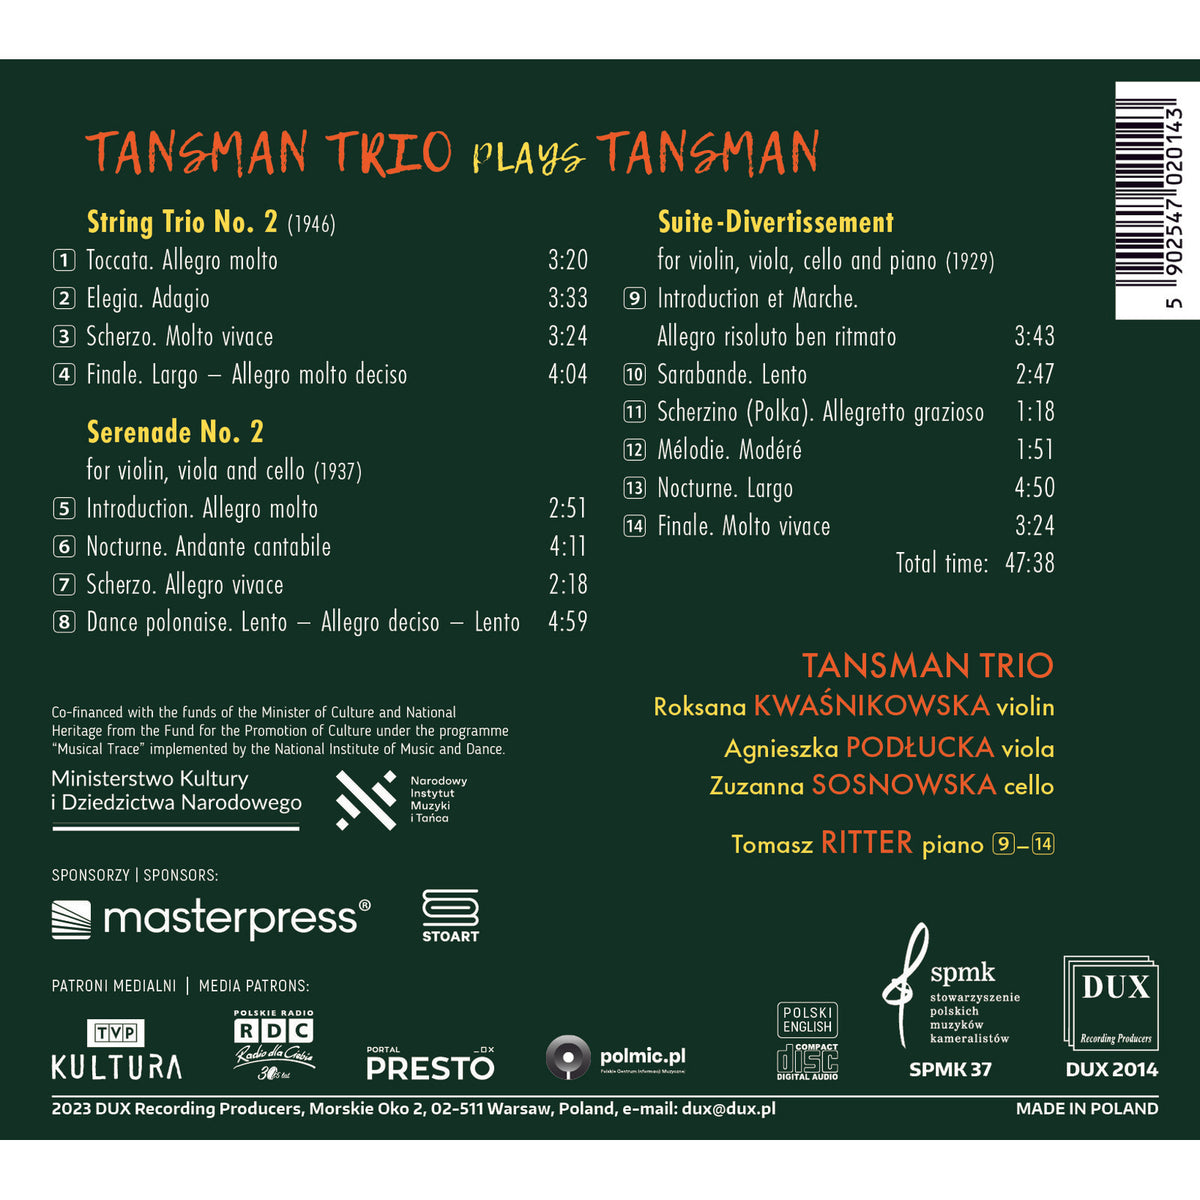 Tomasz Ritter, Tansman Trio - Tansman Trio Plays Tansman - DUX2014